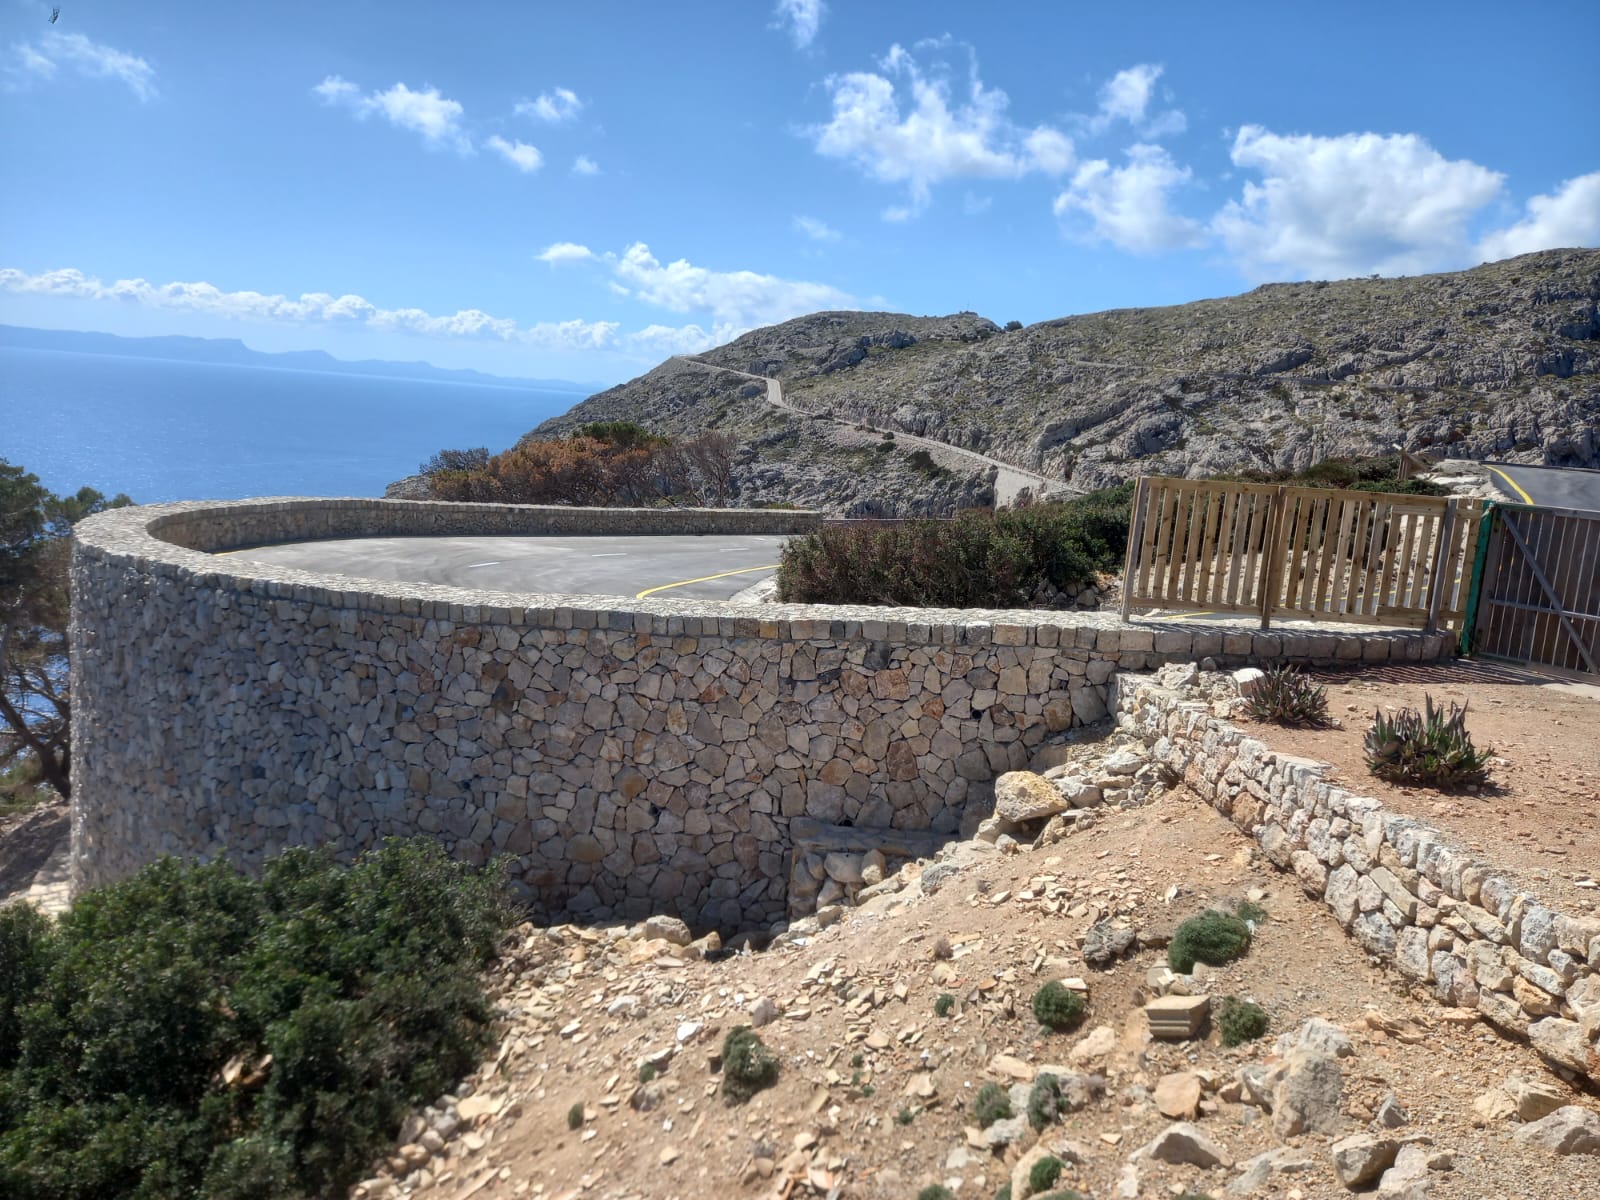 Obri la carretera del far de Formentor després d'arreglar un marge